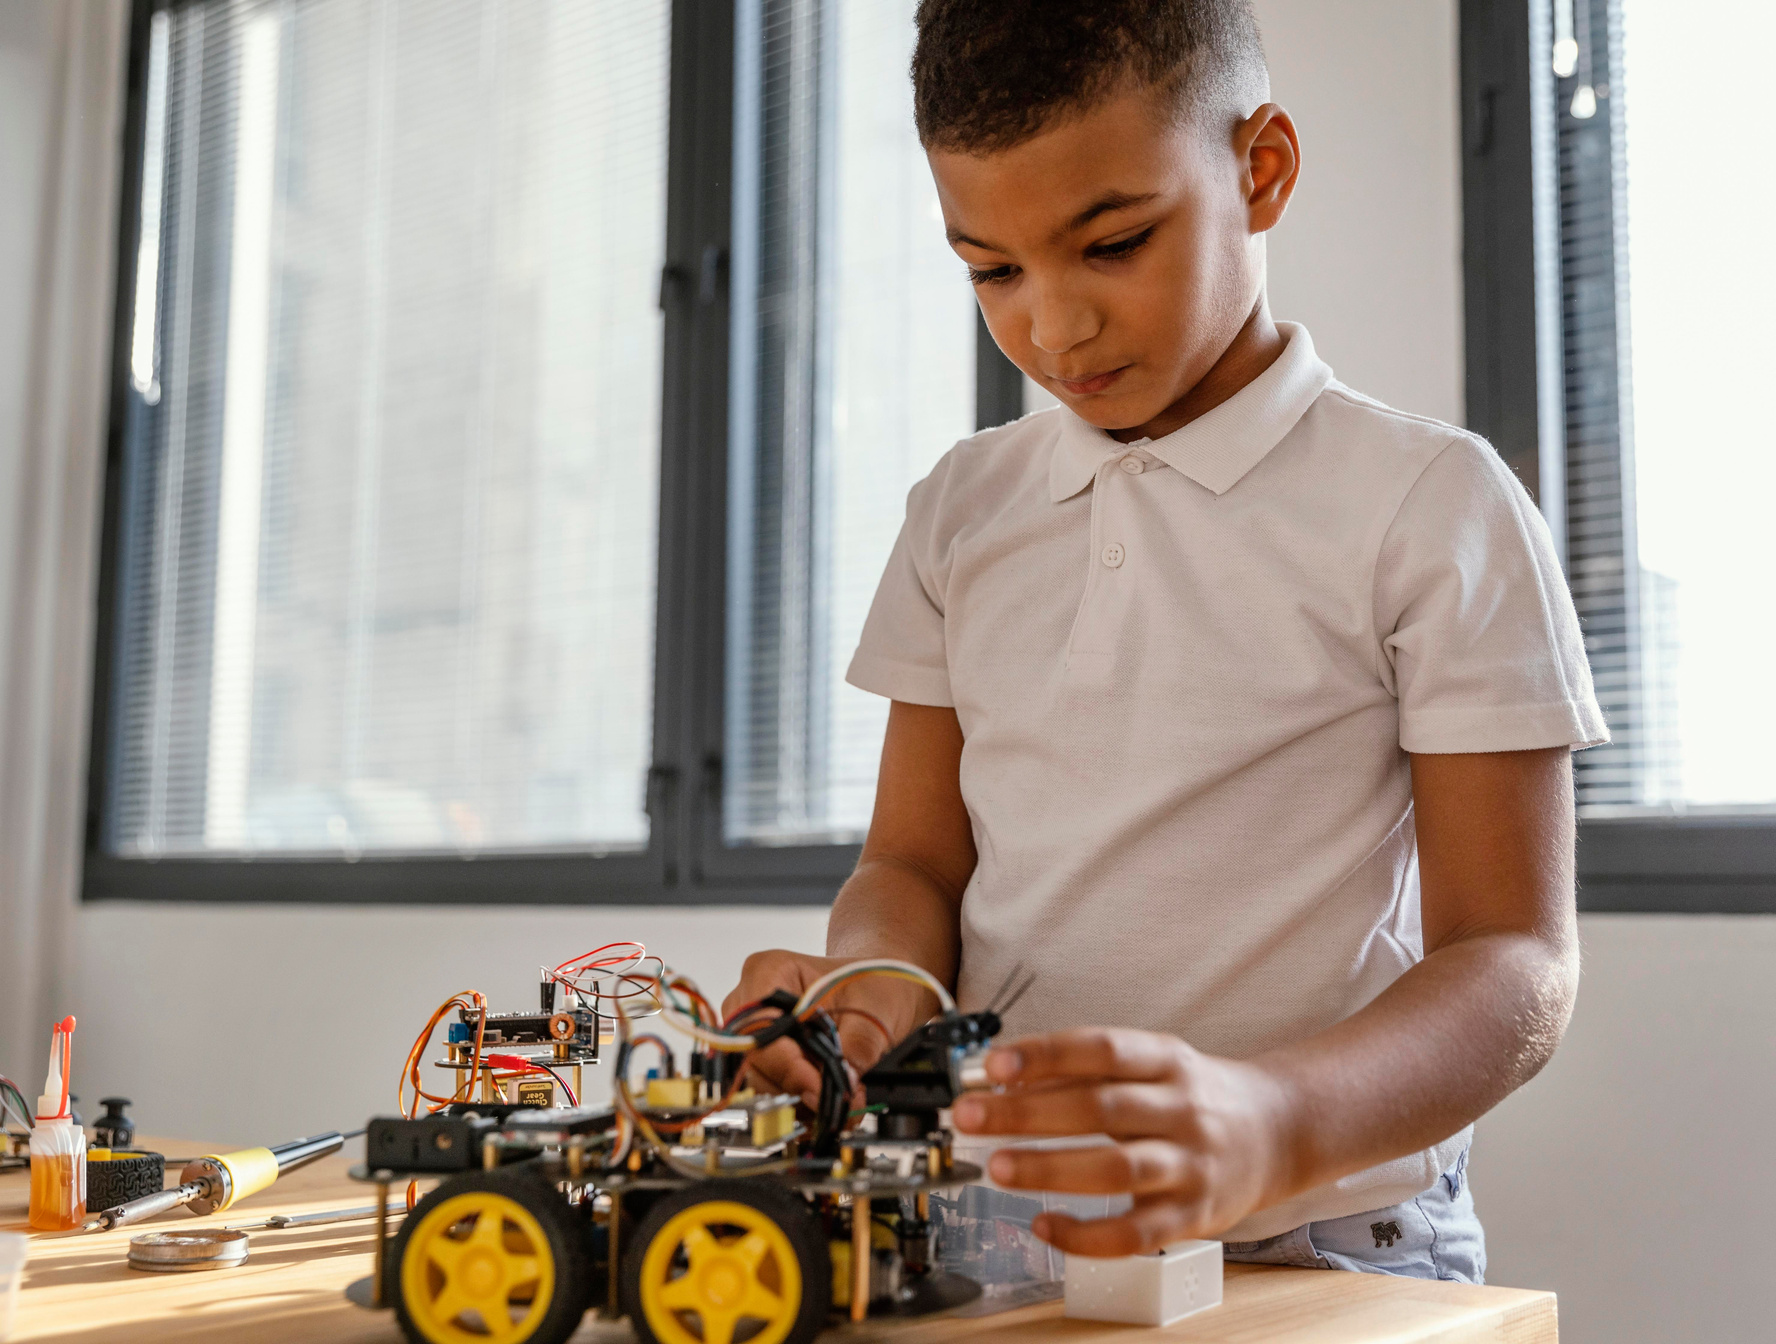 Child Making Robot